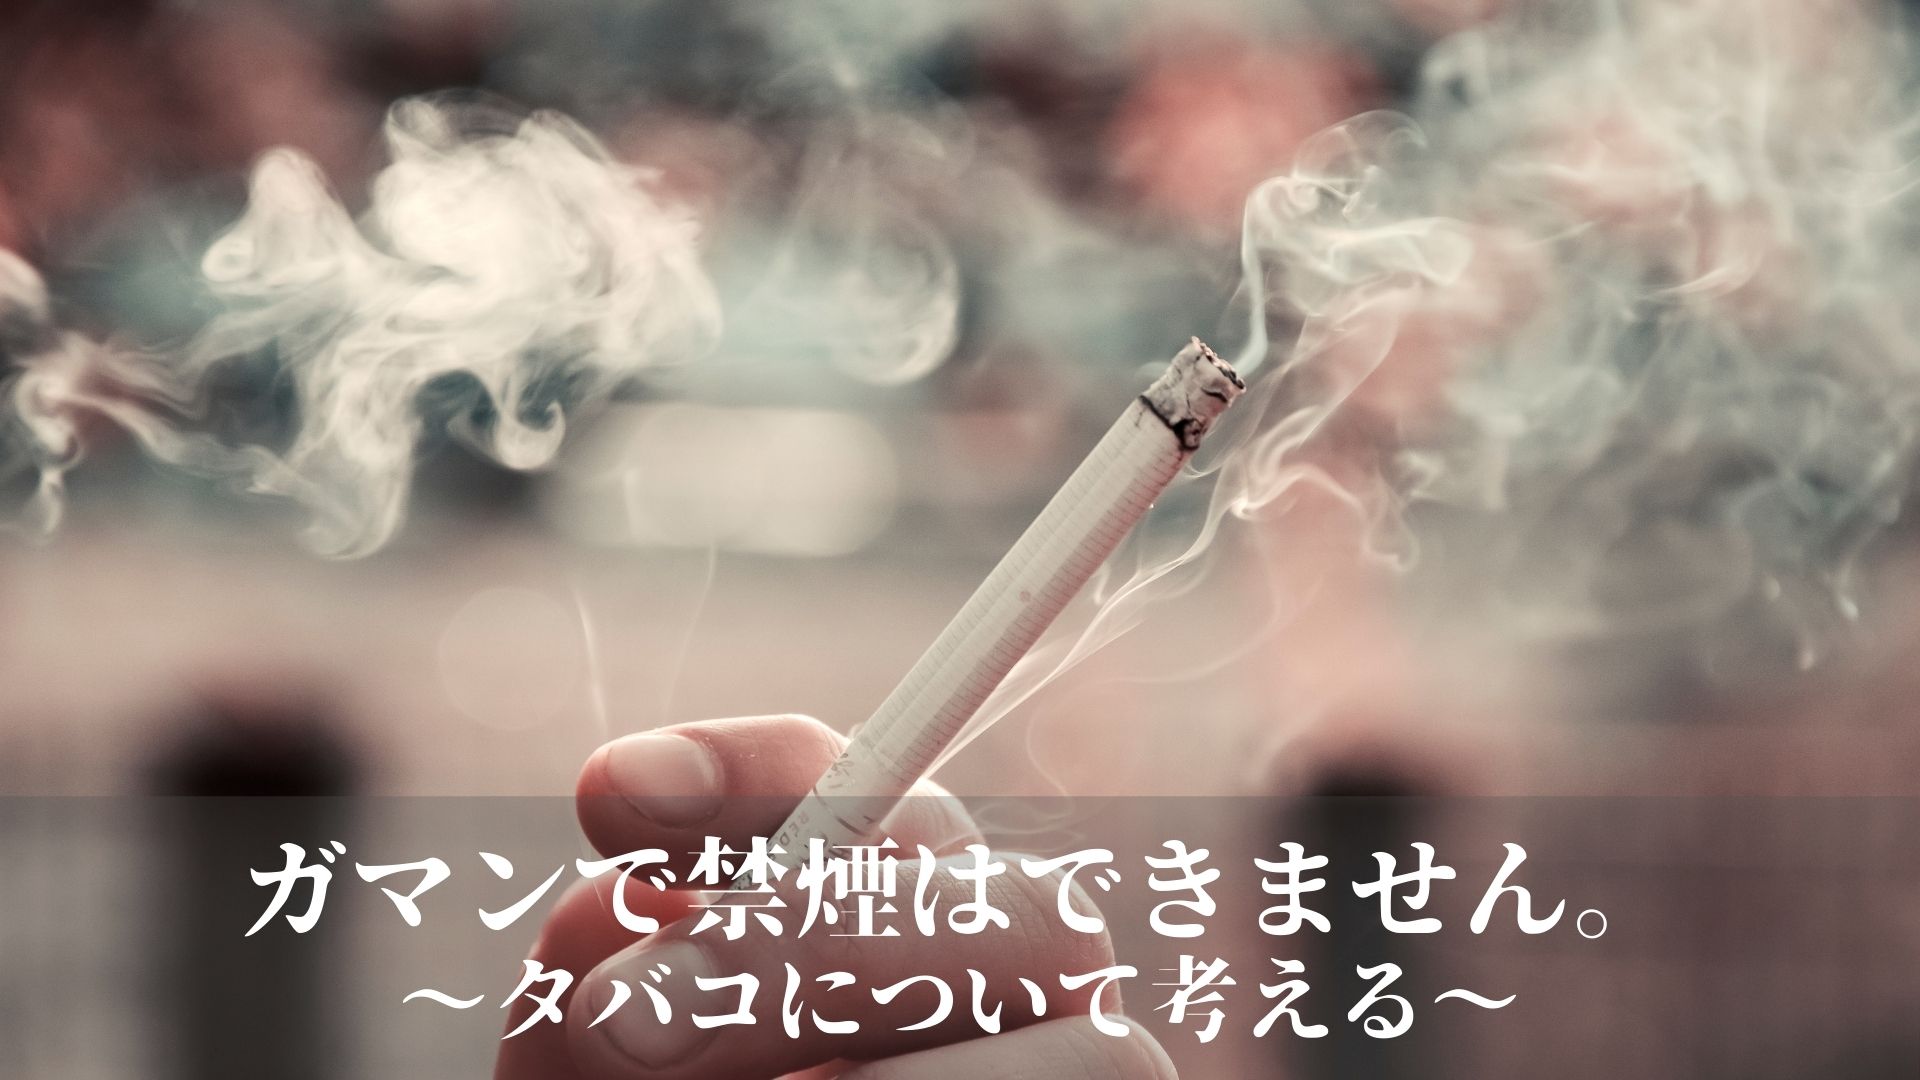 ガマンで禁煙はできません。〜タバコについて考える〜